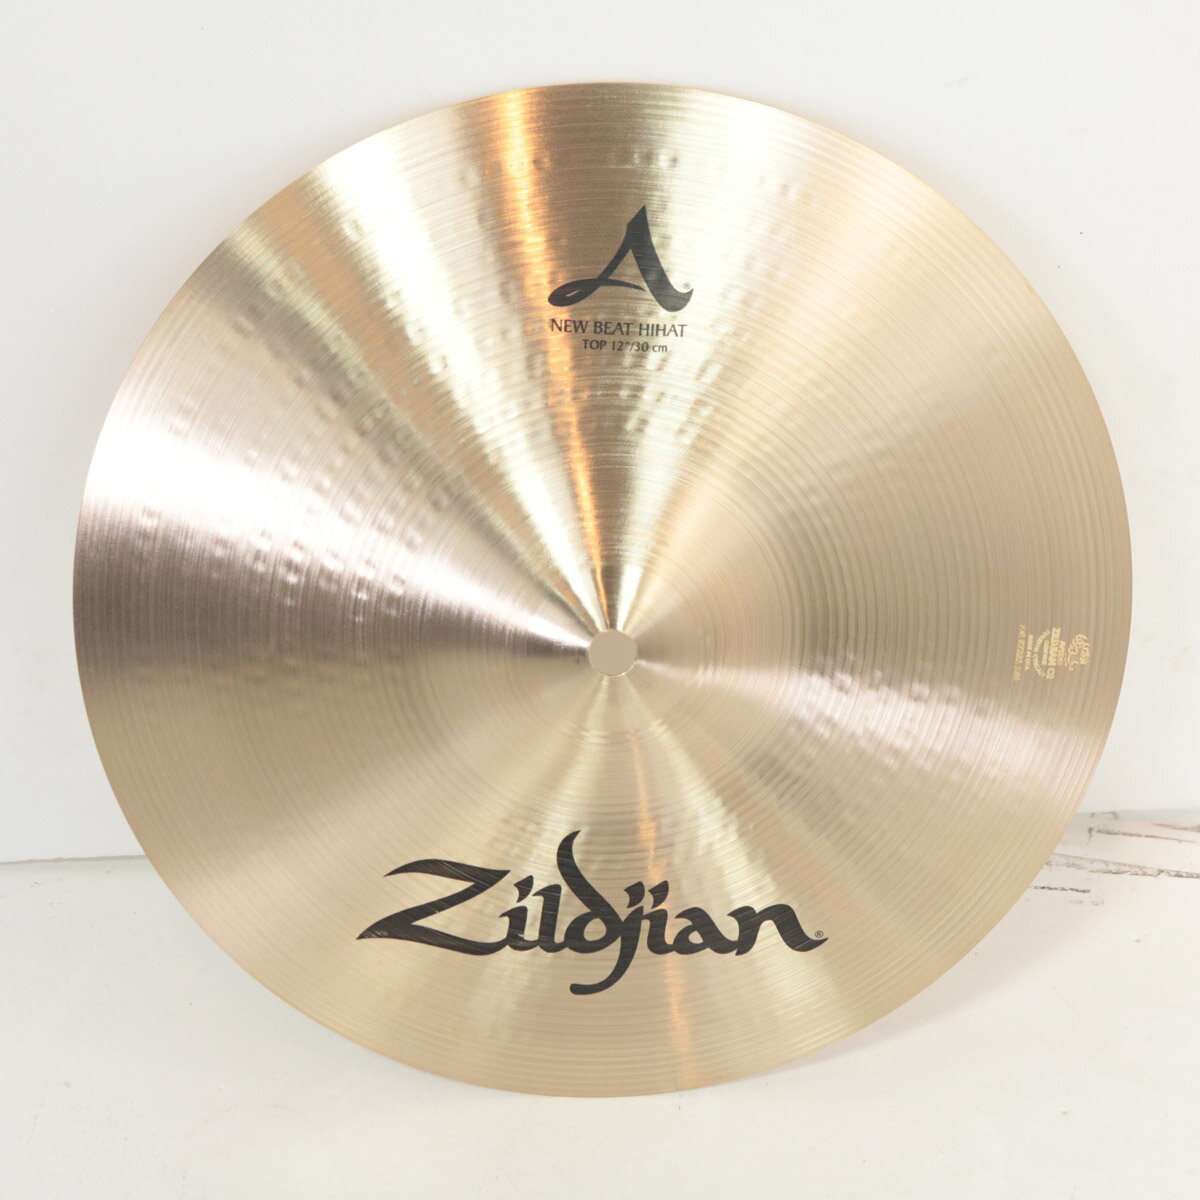 Zildjian / A.Zildjian NEWBEAT Hihat Topのみ 12インチ ニュービートハイハット